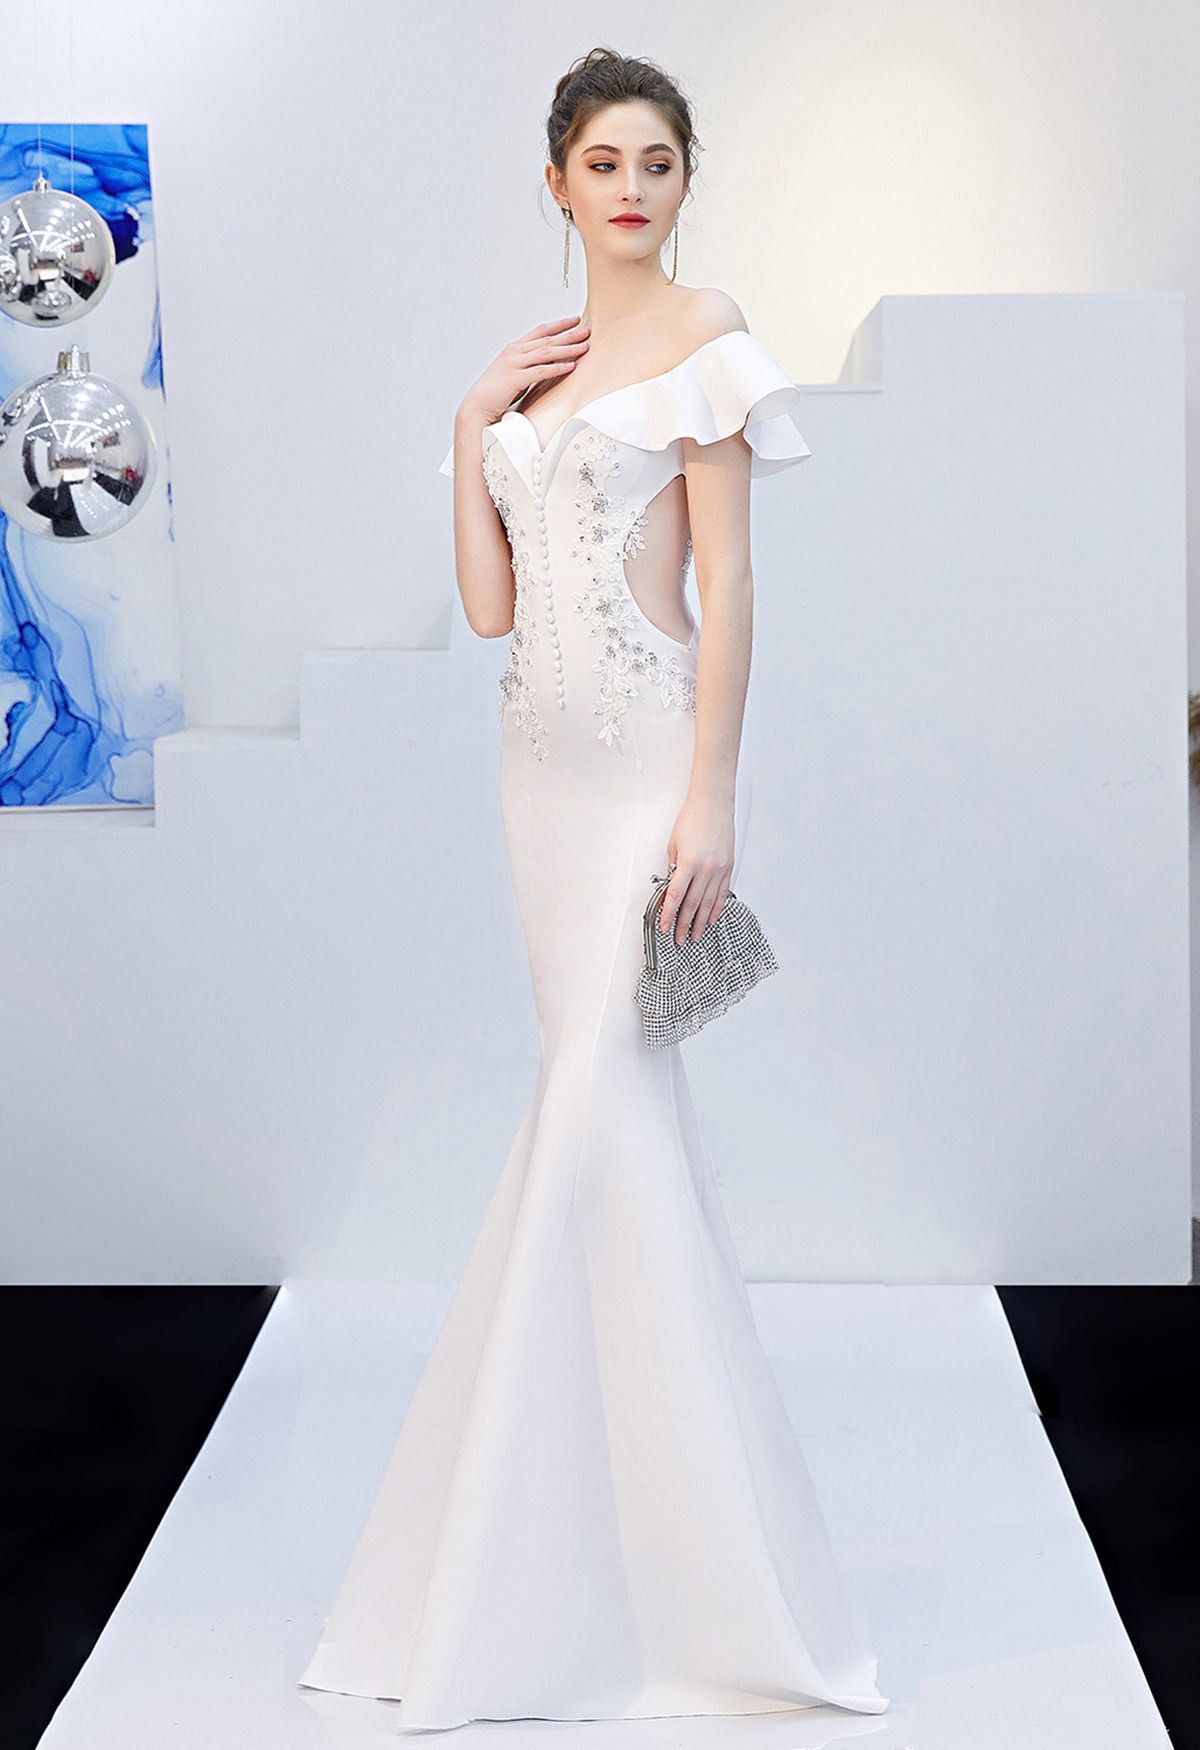 Gerüschtes Off-Shoulder-Stickerei-Meerjungfrauenkleid in Weiß